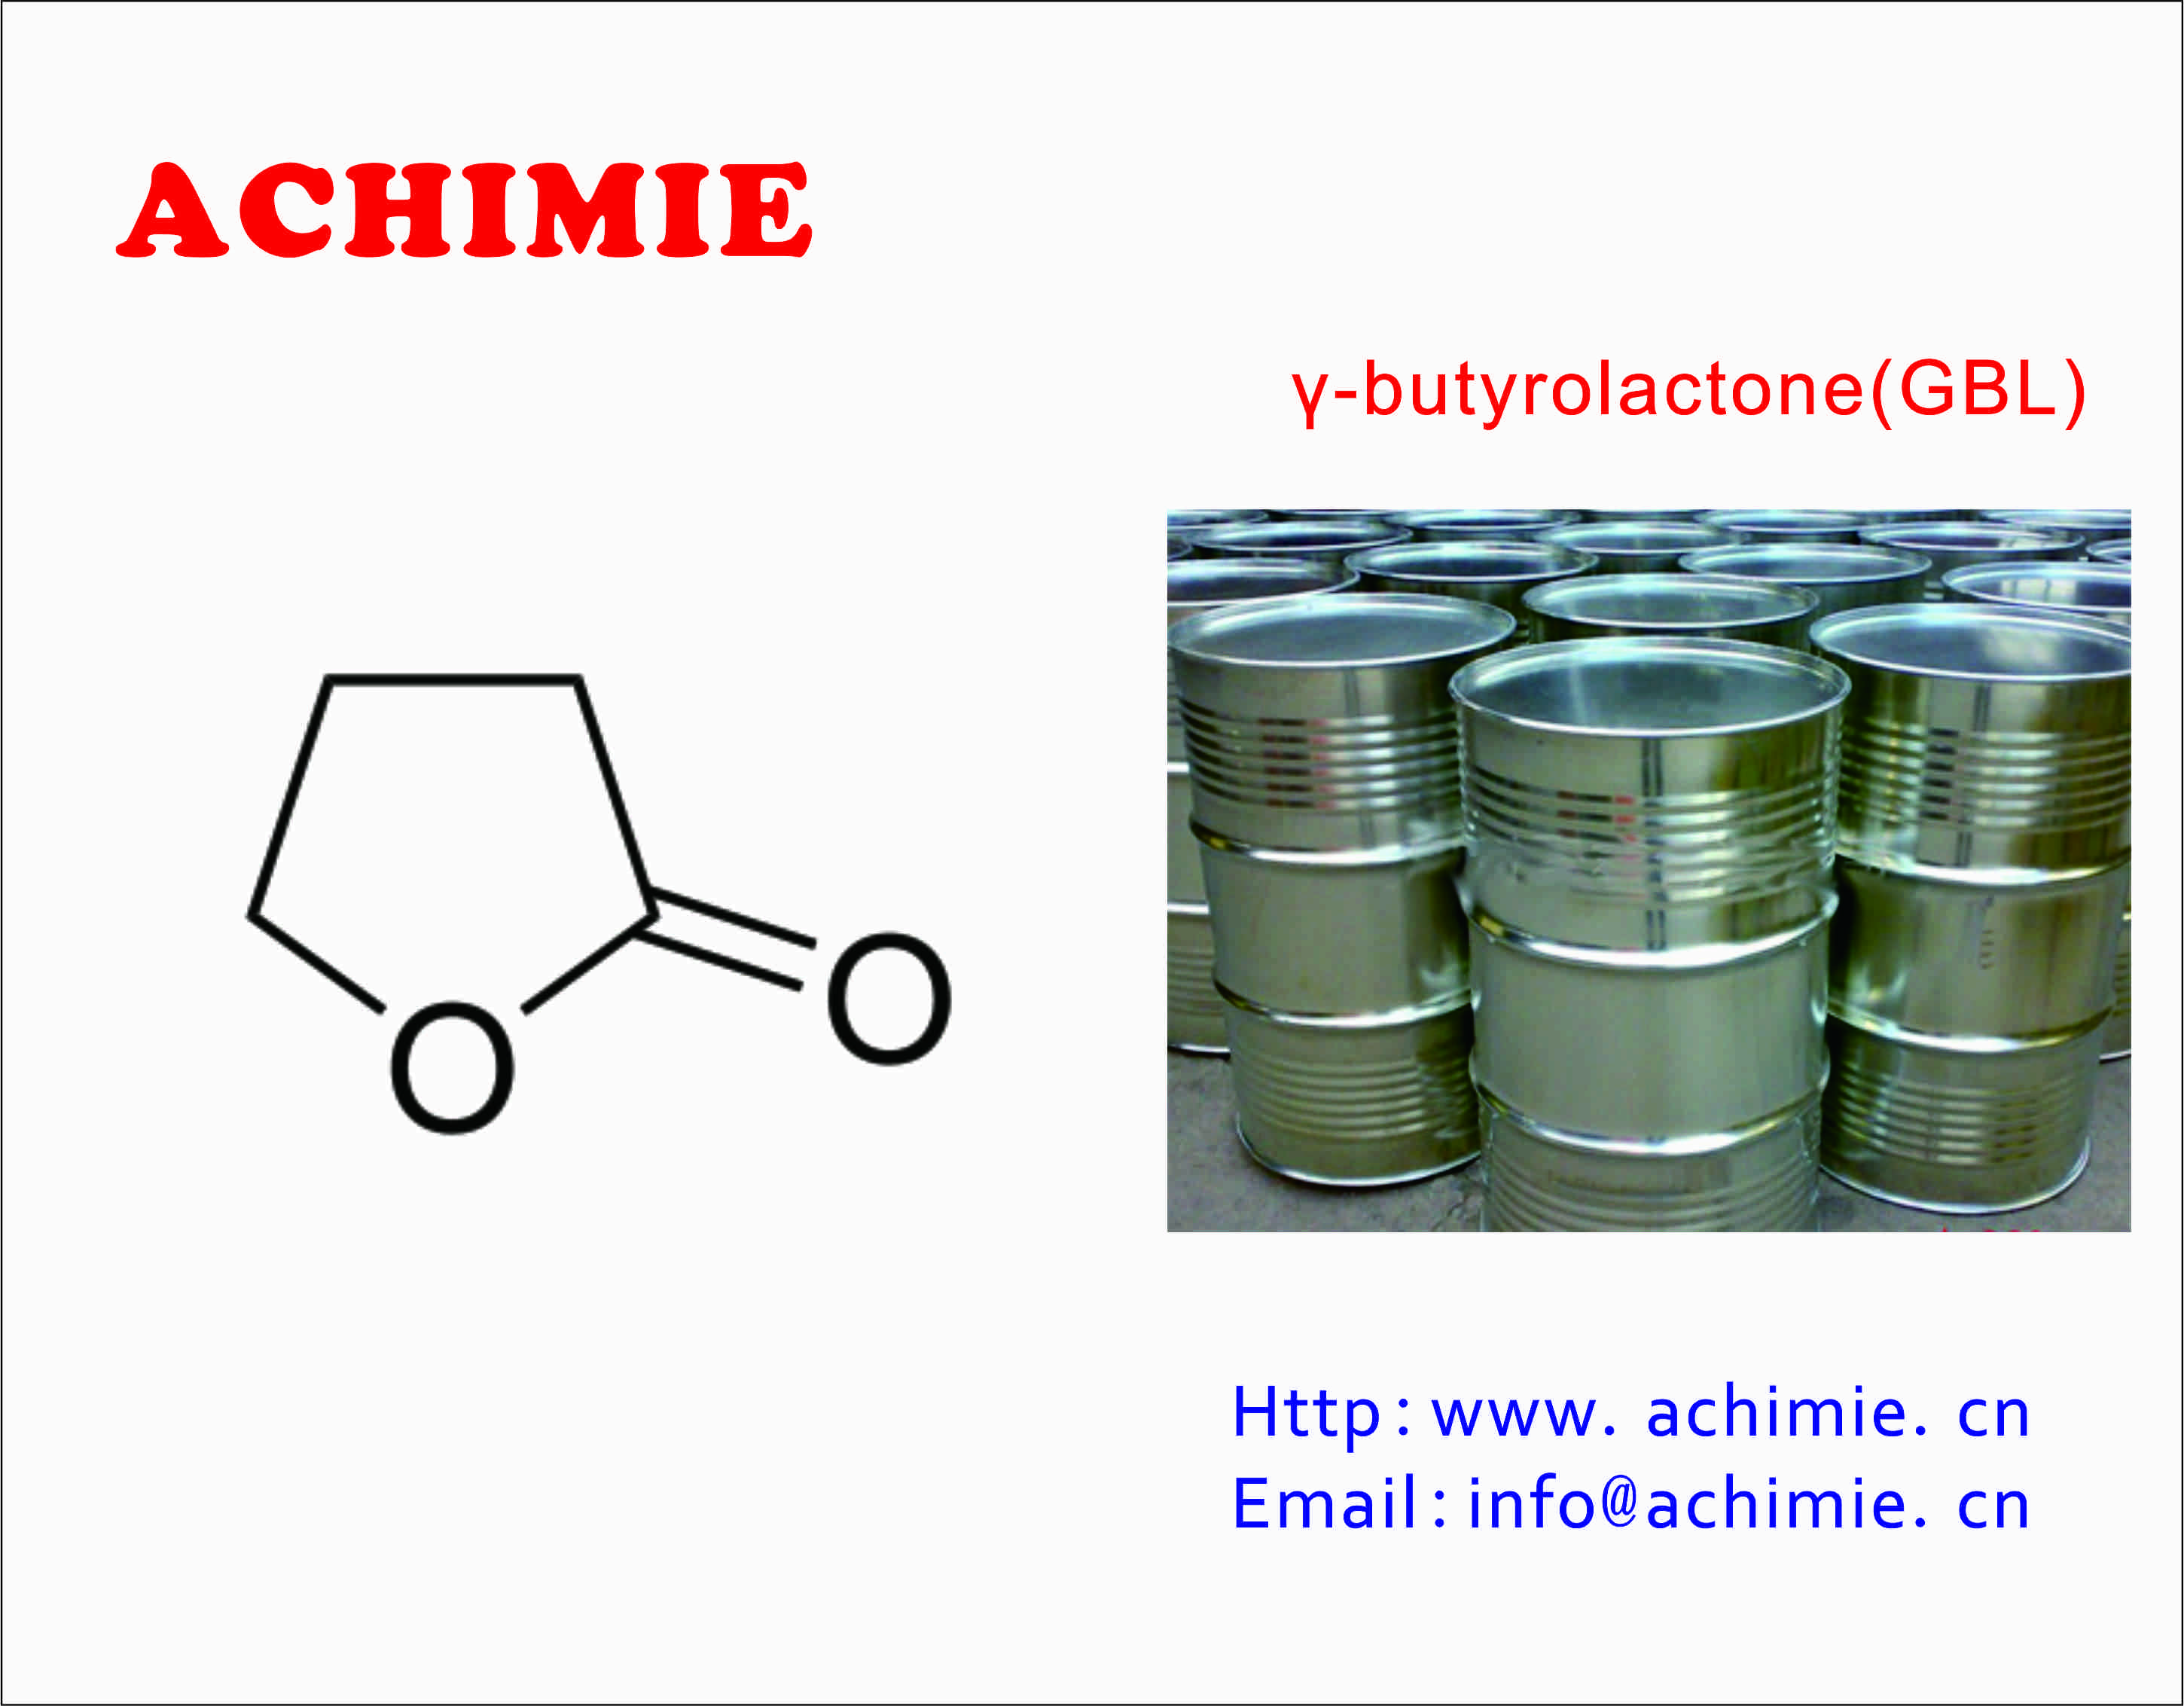 γ-butyrolactone(GBL)